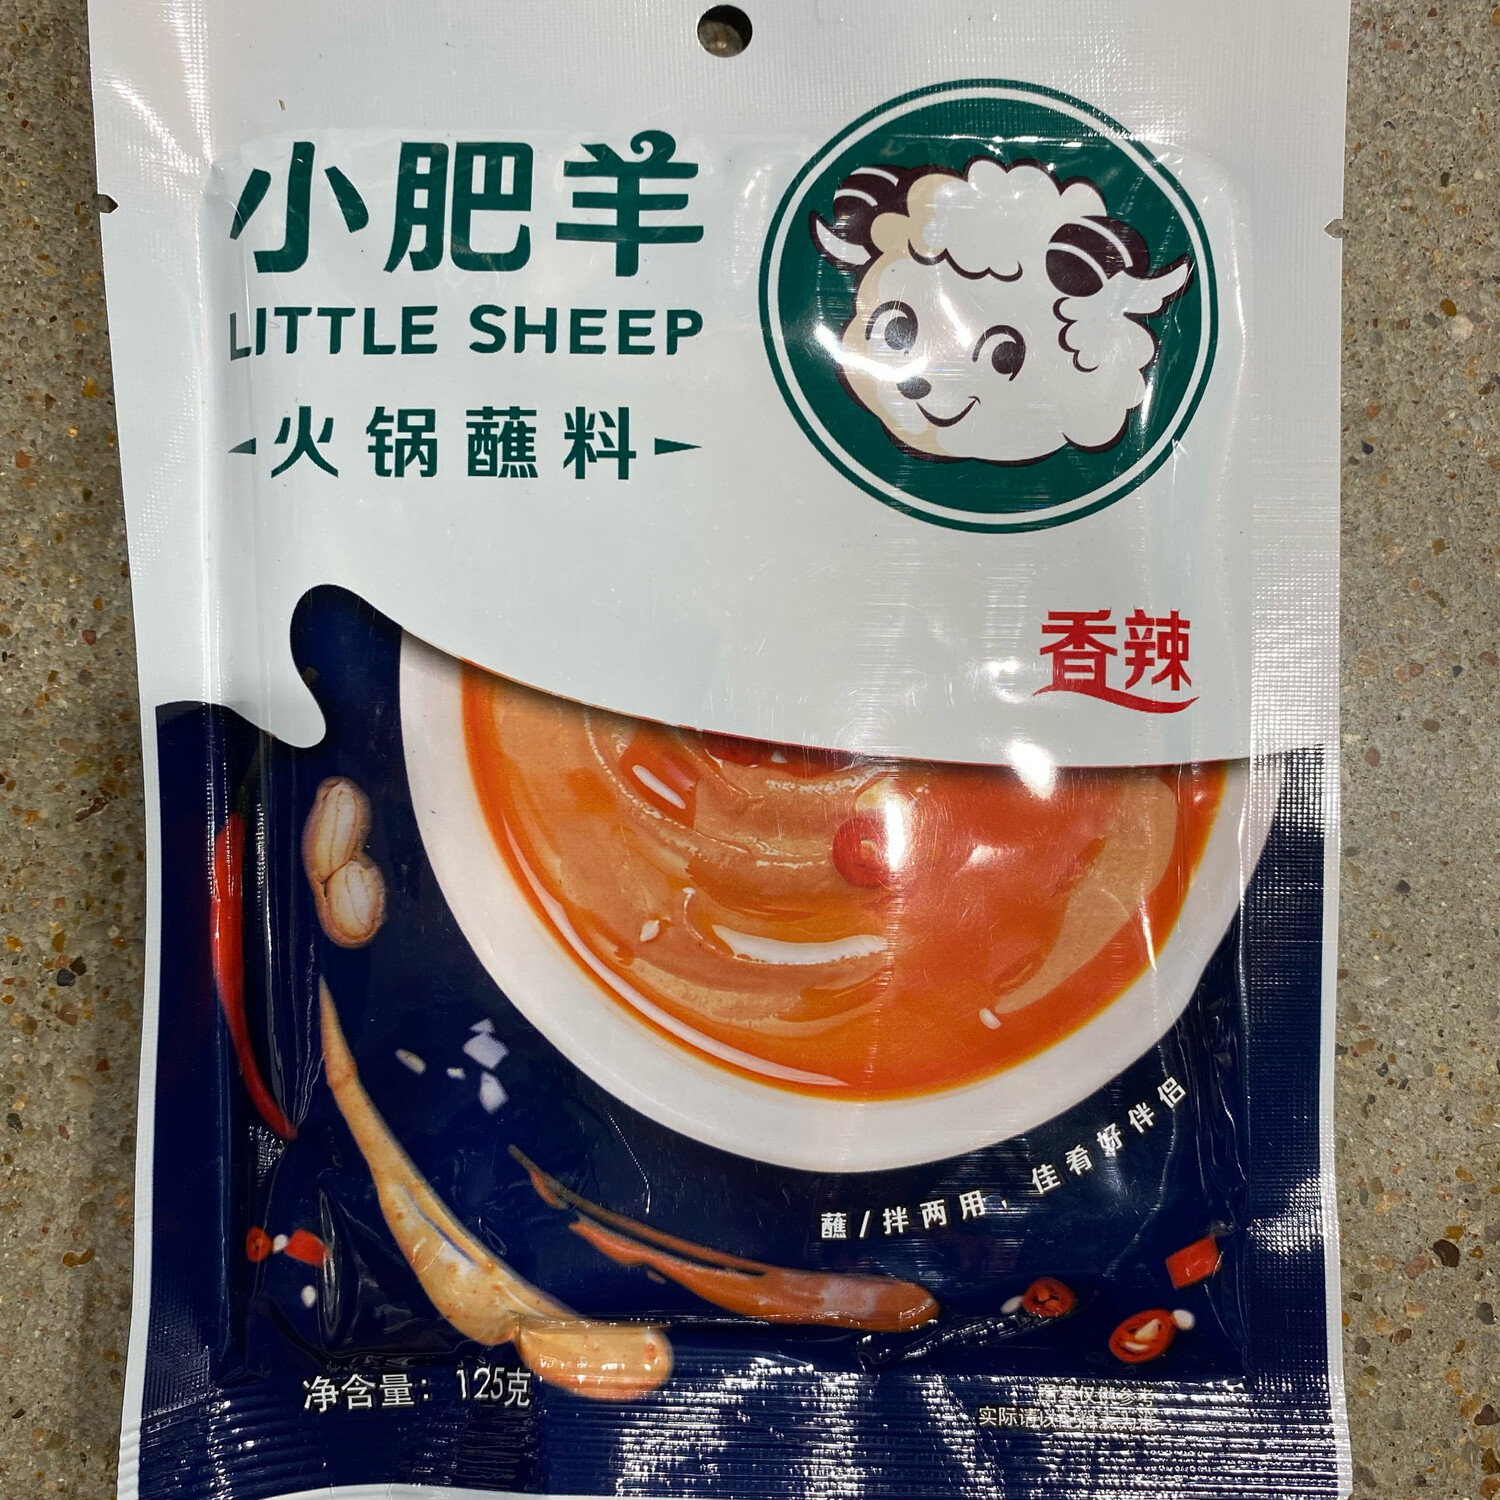 小肥羊火锅蘸料香辣味 LITTLE SHEEP SPICY FLAVOR~140g